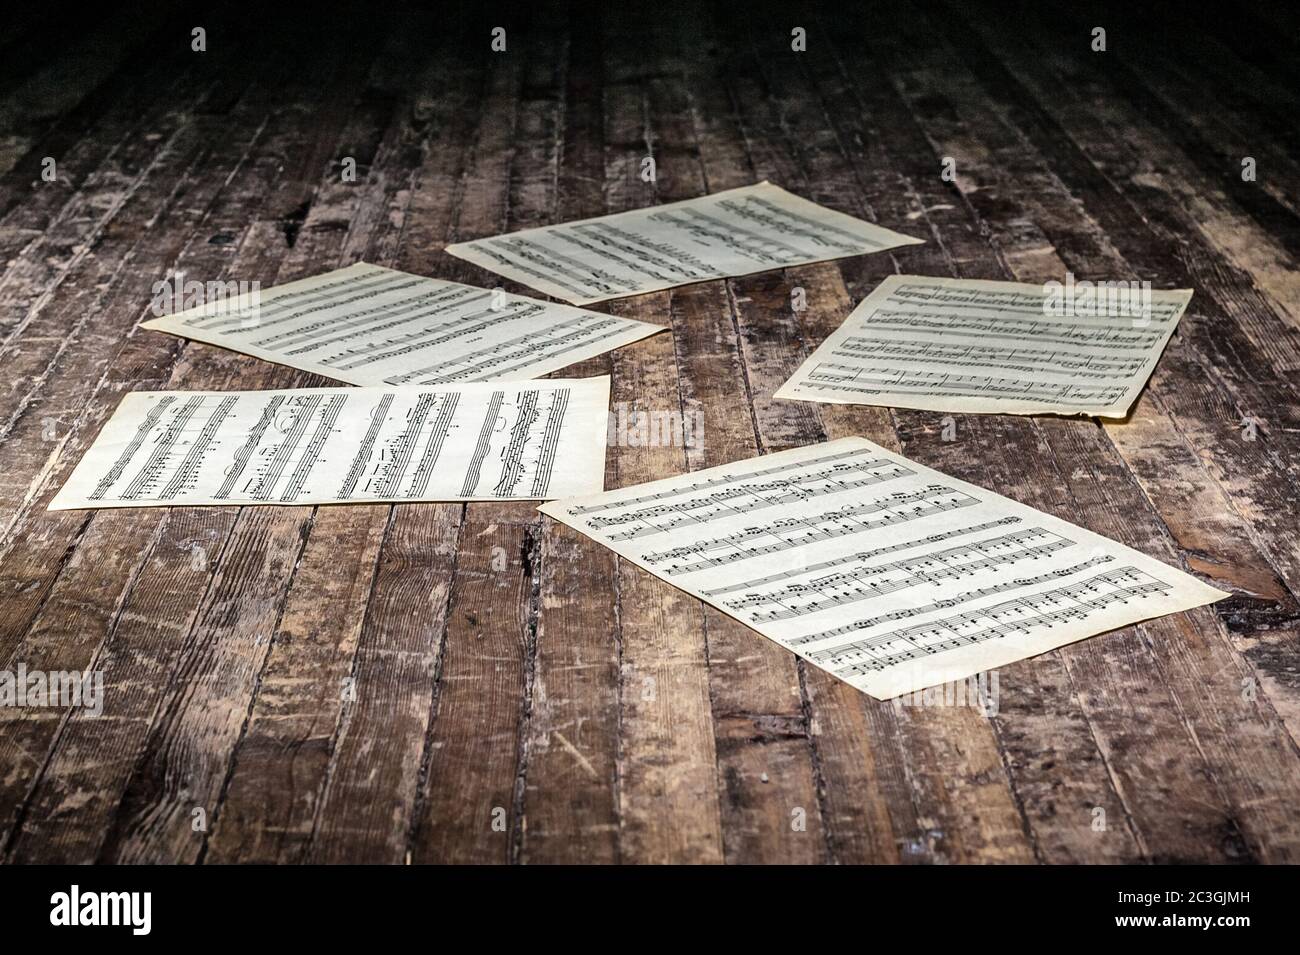 Musikblätter mit Noten eines Musikwerks liegen im Dunkeln auf dem alten Boden Stockfoto